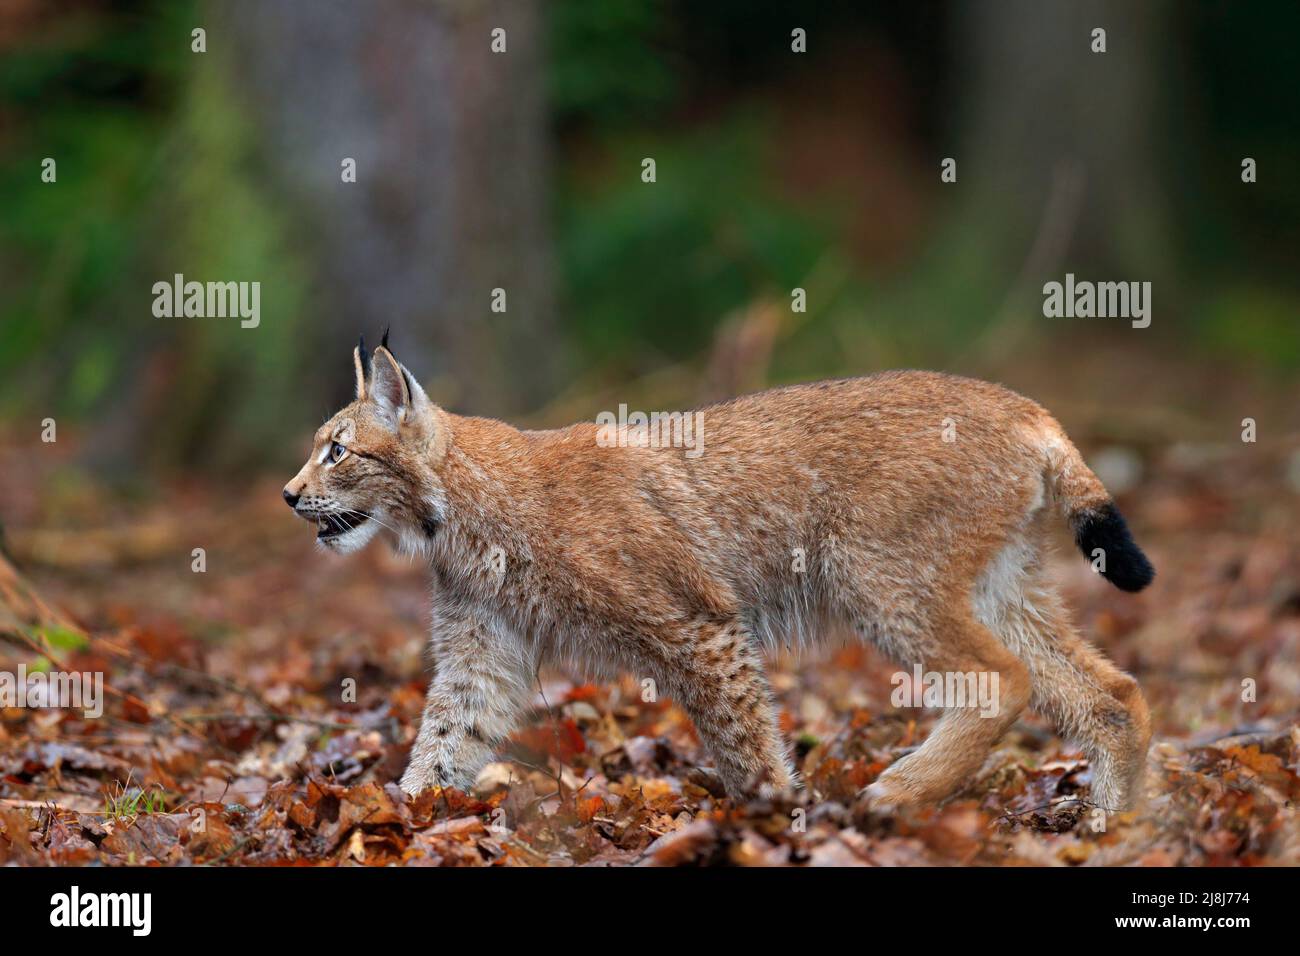 Randonnée sauvage chat eurasien Lynx dans des feuilles d'automne orange, forêt en arrière-plan Banque D'Images